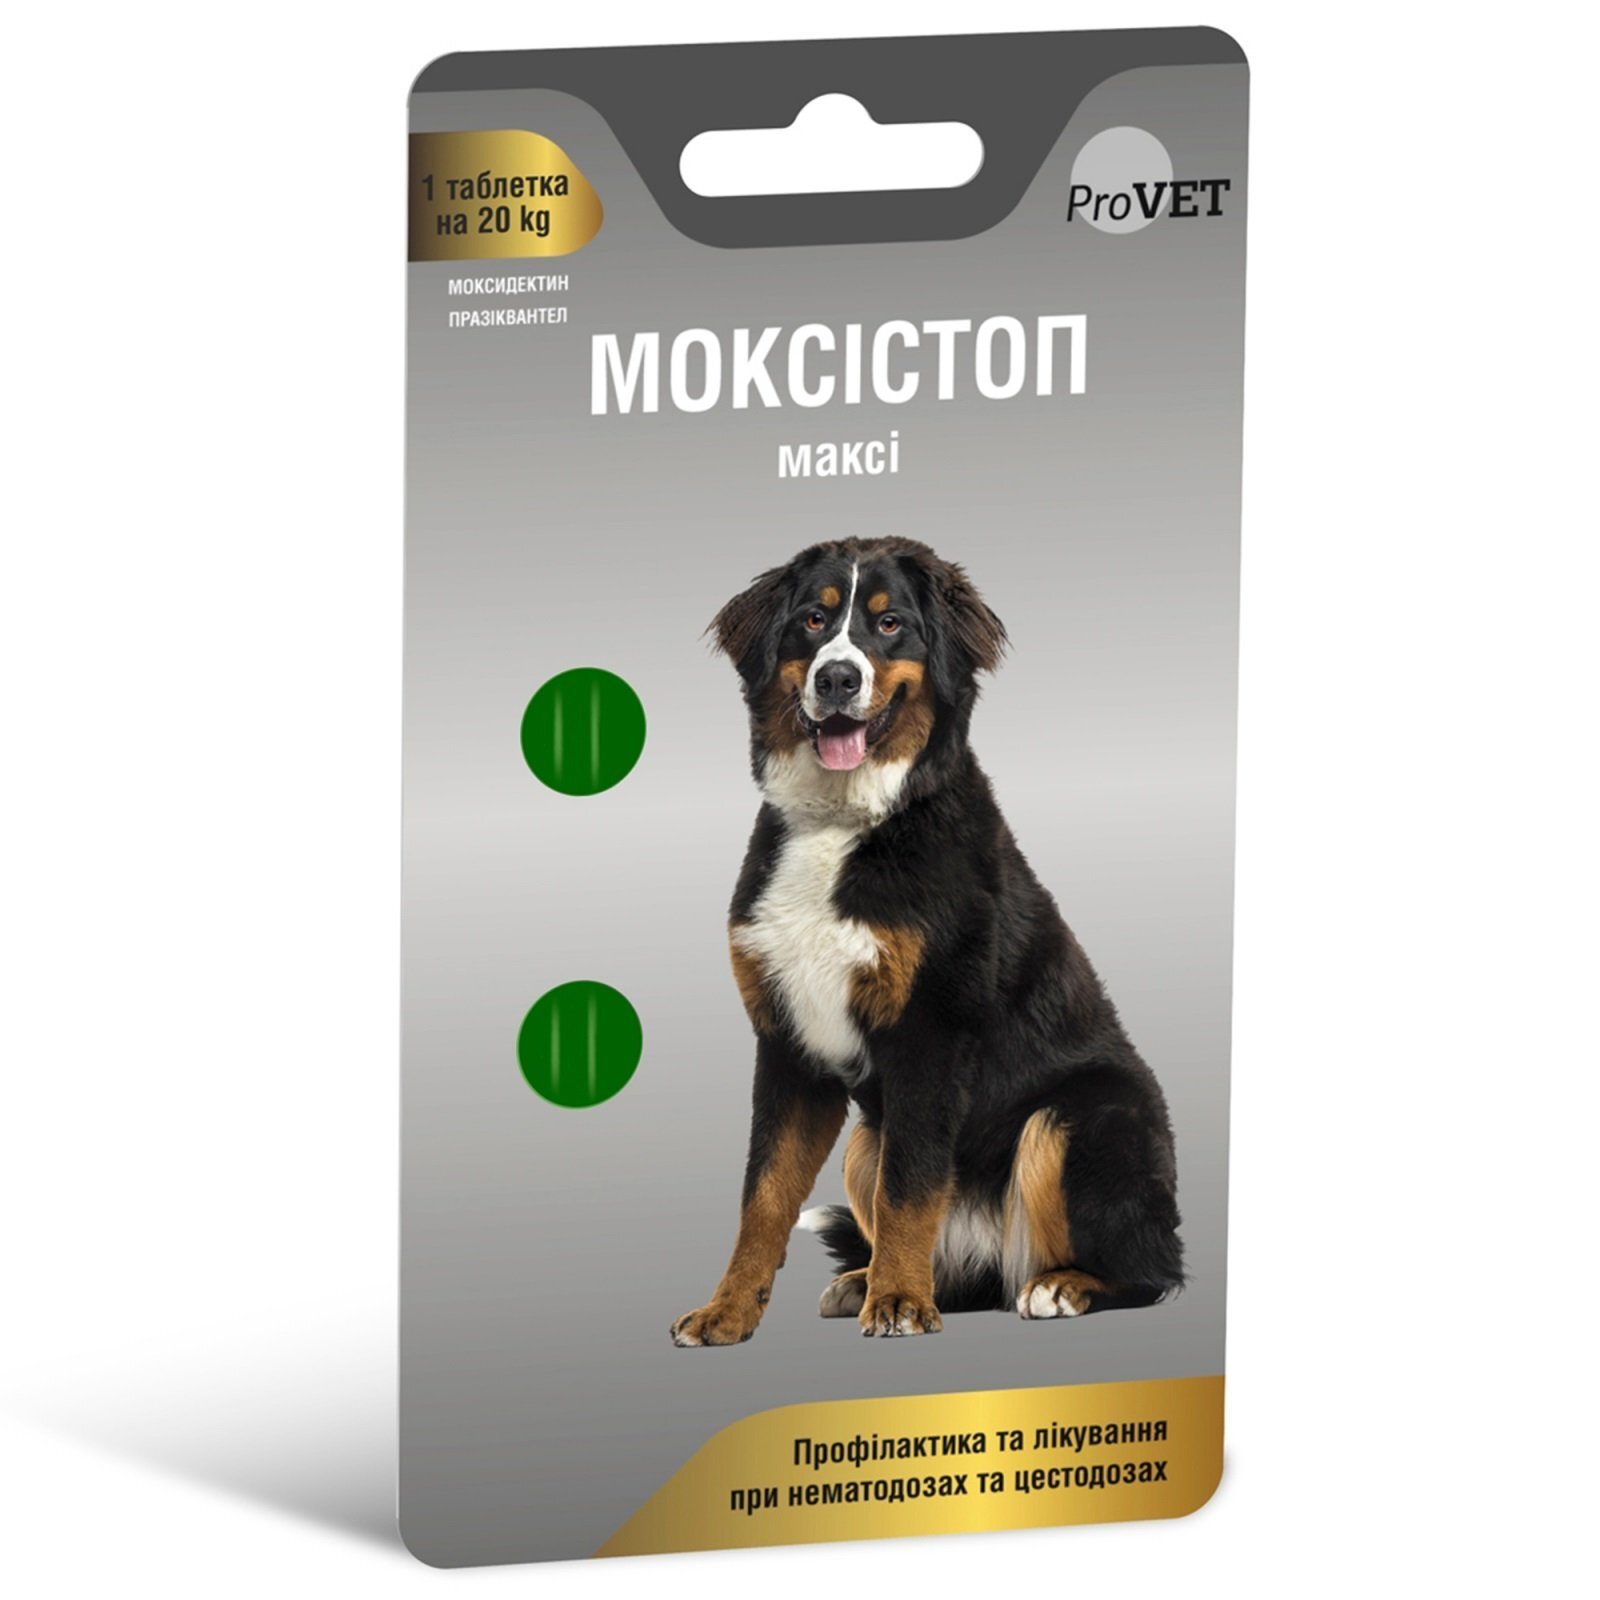 Антигельминтный препарат ProVET Моксистоп макси для собак, 2 таблетки по 500 мг фото 1